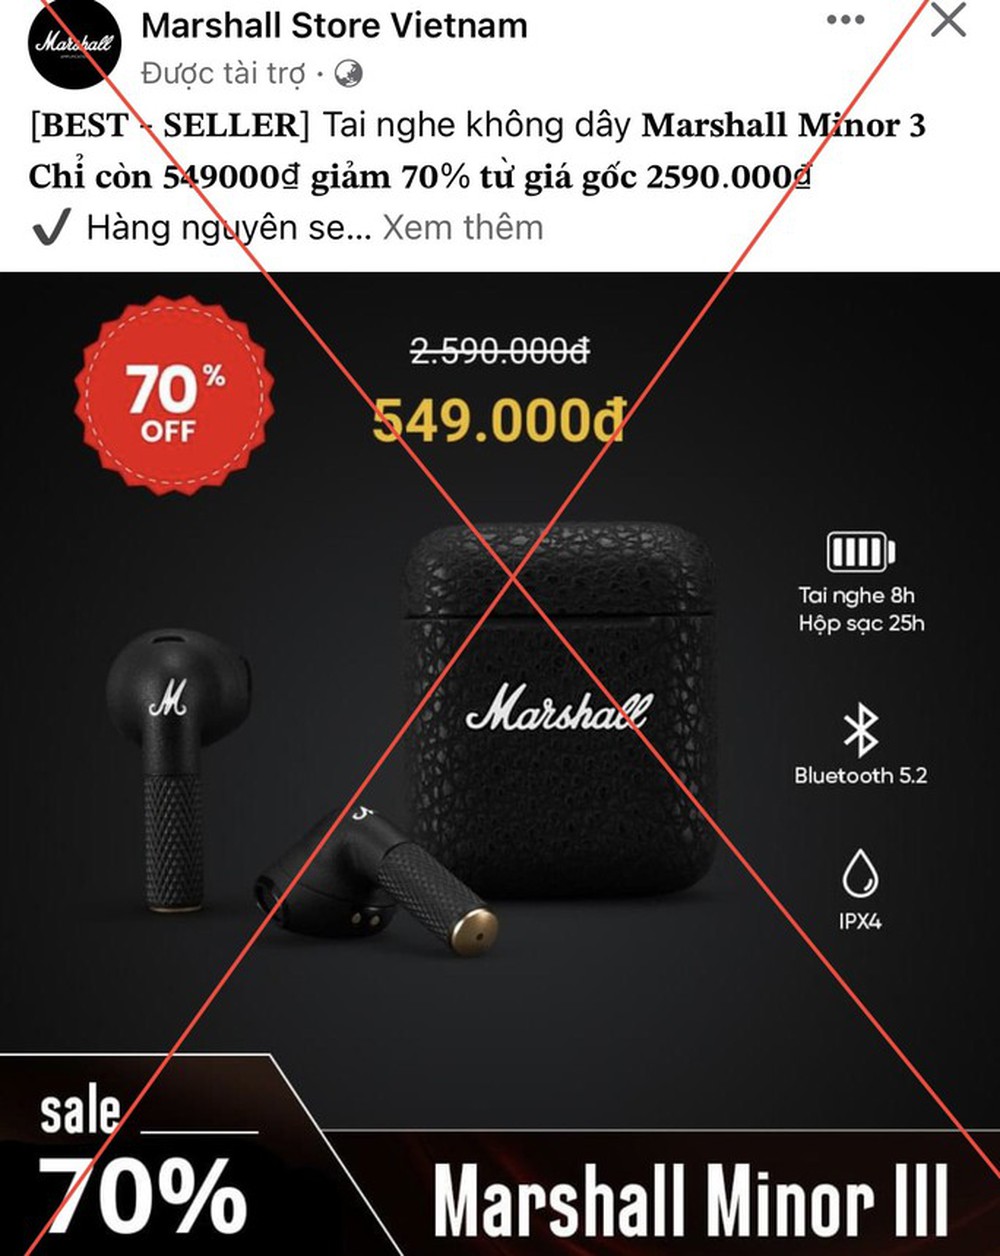 Tràn ngập fanpage giả mạo rao bán tai nghe Samsung, Marshall giảm giá tới 70% - Ảnh 5.